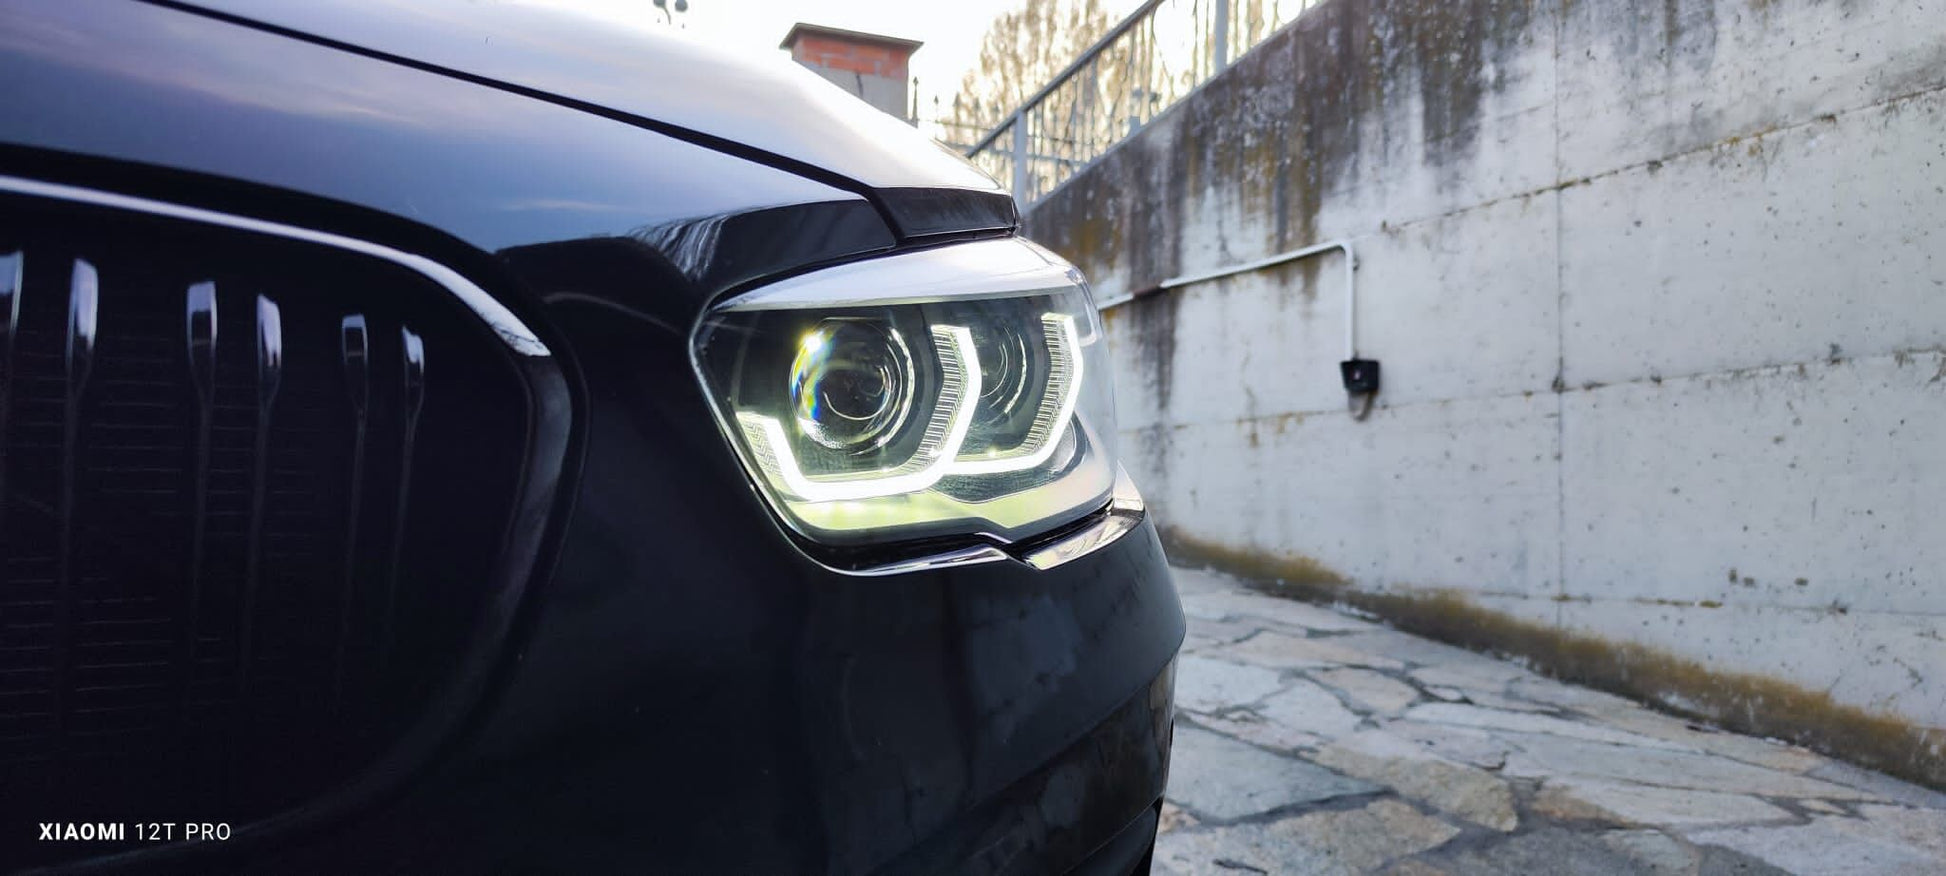 LED Rückleuchtenset BMW 1er F20, F21 LCI, Facelift, LED Bundles